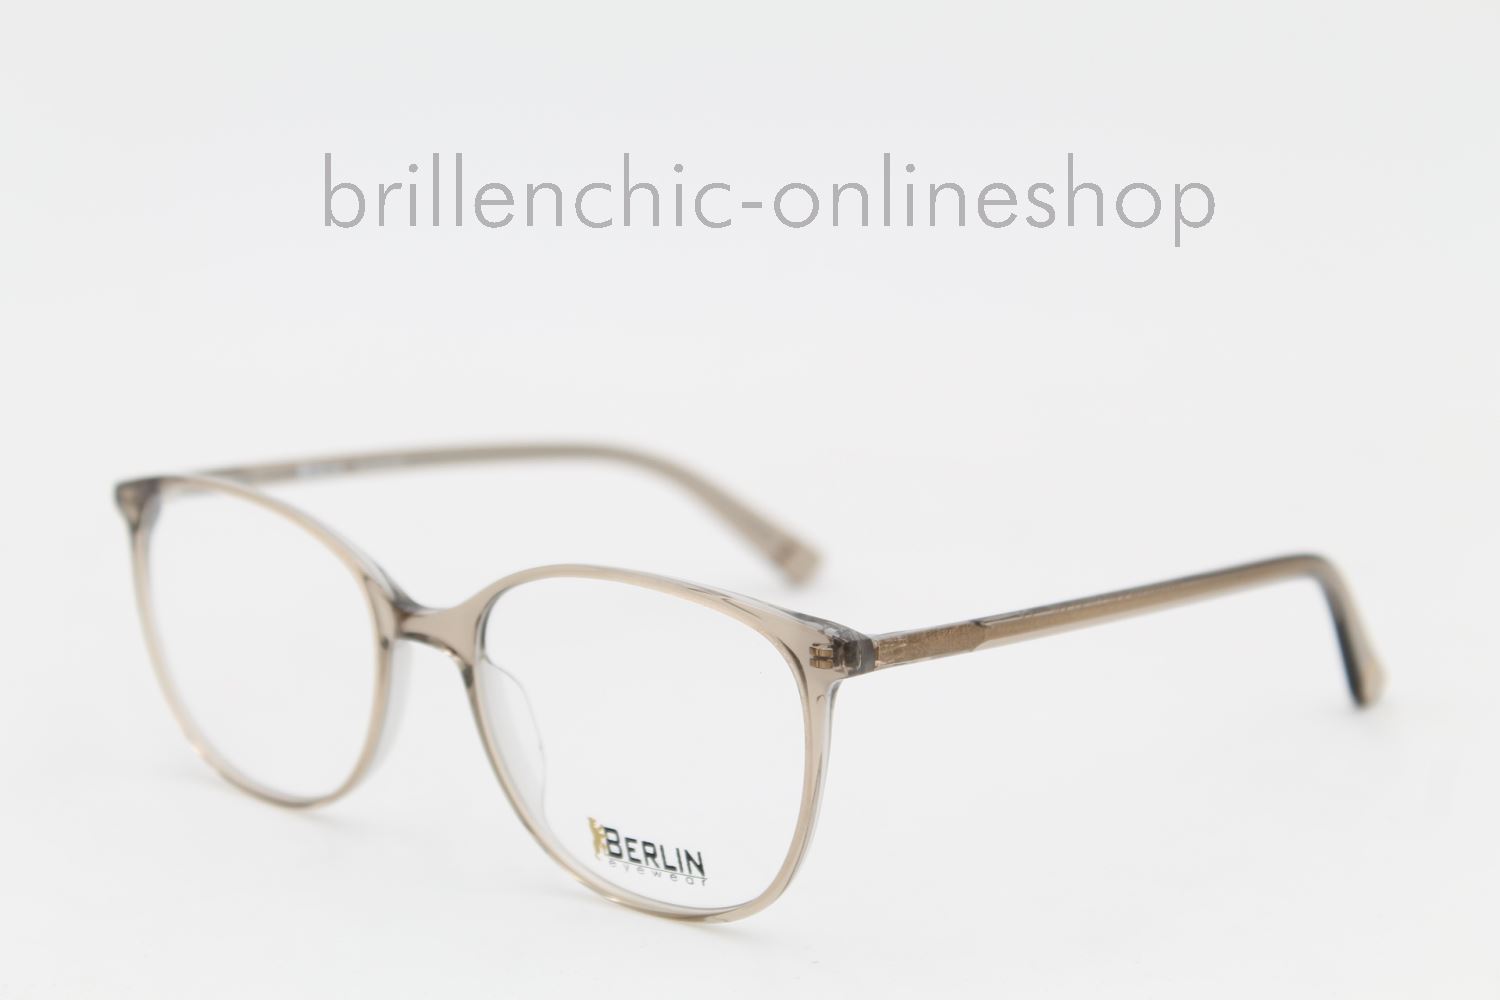 Brillenchic - onlineshop Berlin Ihr starker Partner für exklusive Brillen  online kaufen/BERLIN EYEWEAR - TRÄNENPALAST C 10 exklusiv im  Brillenchic-OnlineshopRAG & BONE RNB 5006S 5006 N9P KU